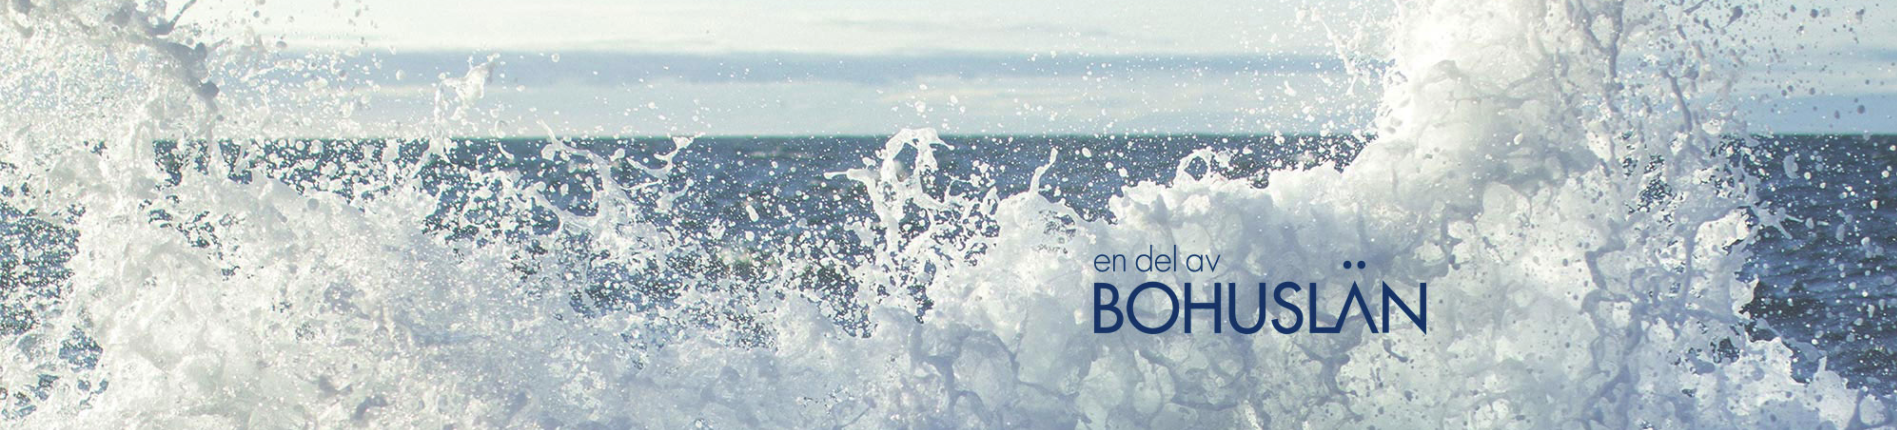 Img: Ozean Wellen und der text Bohulän